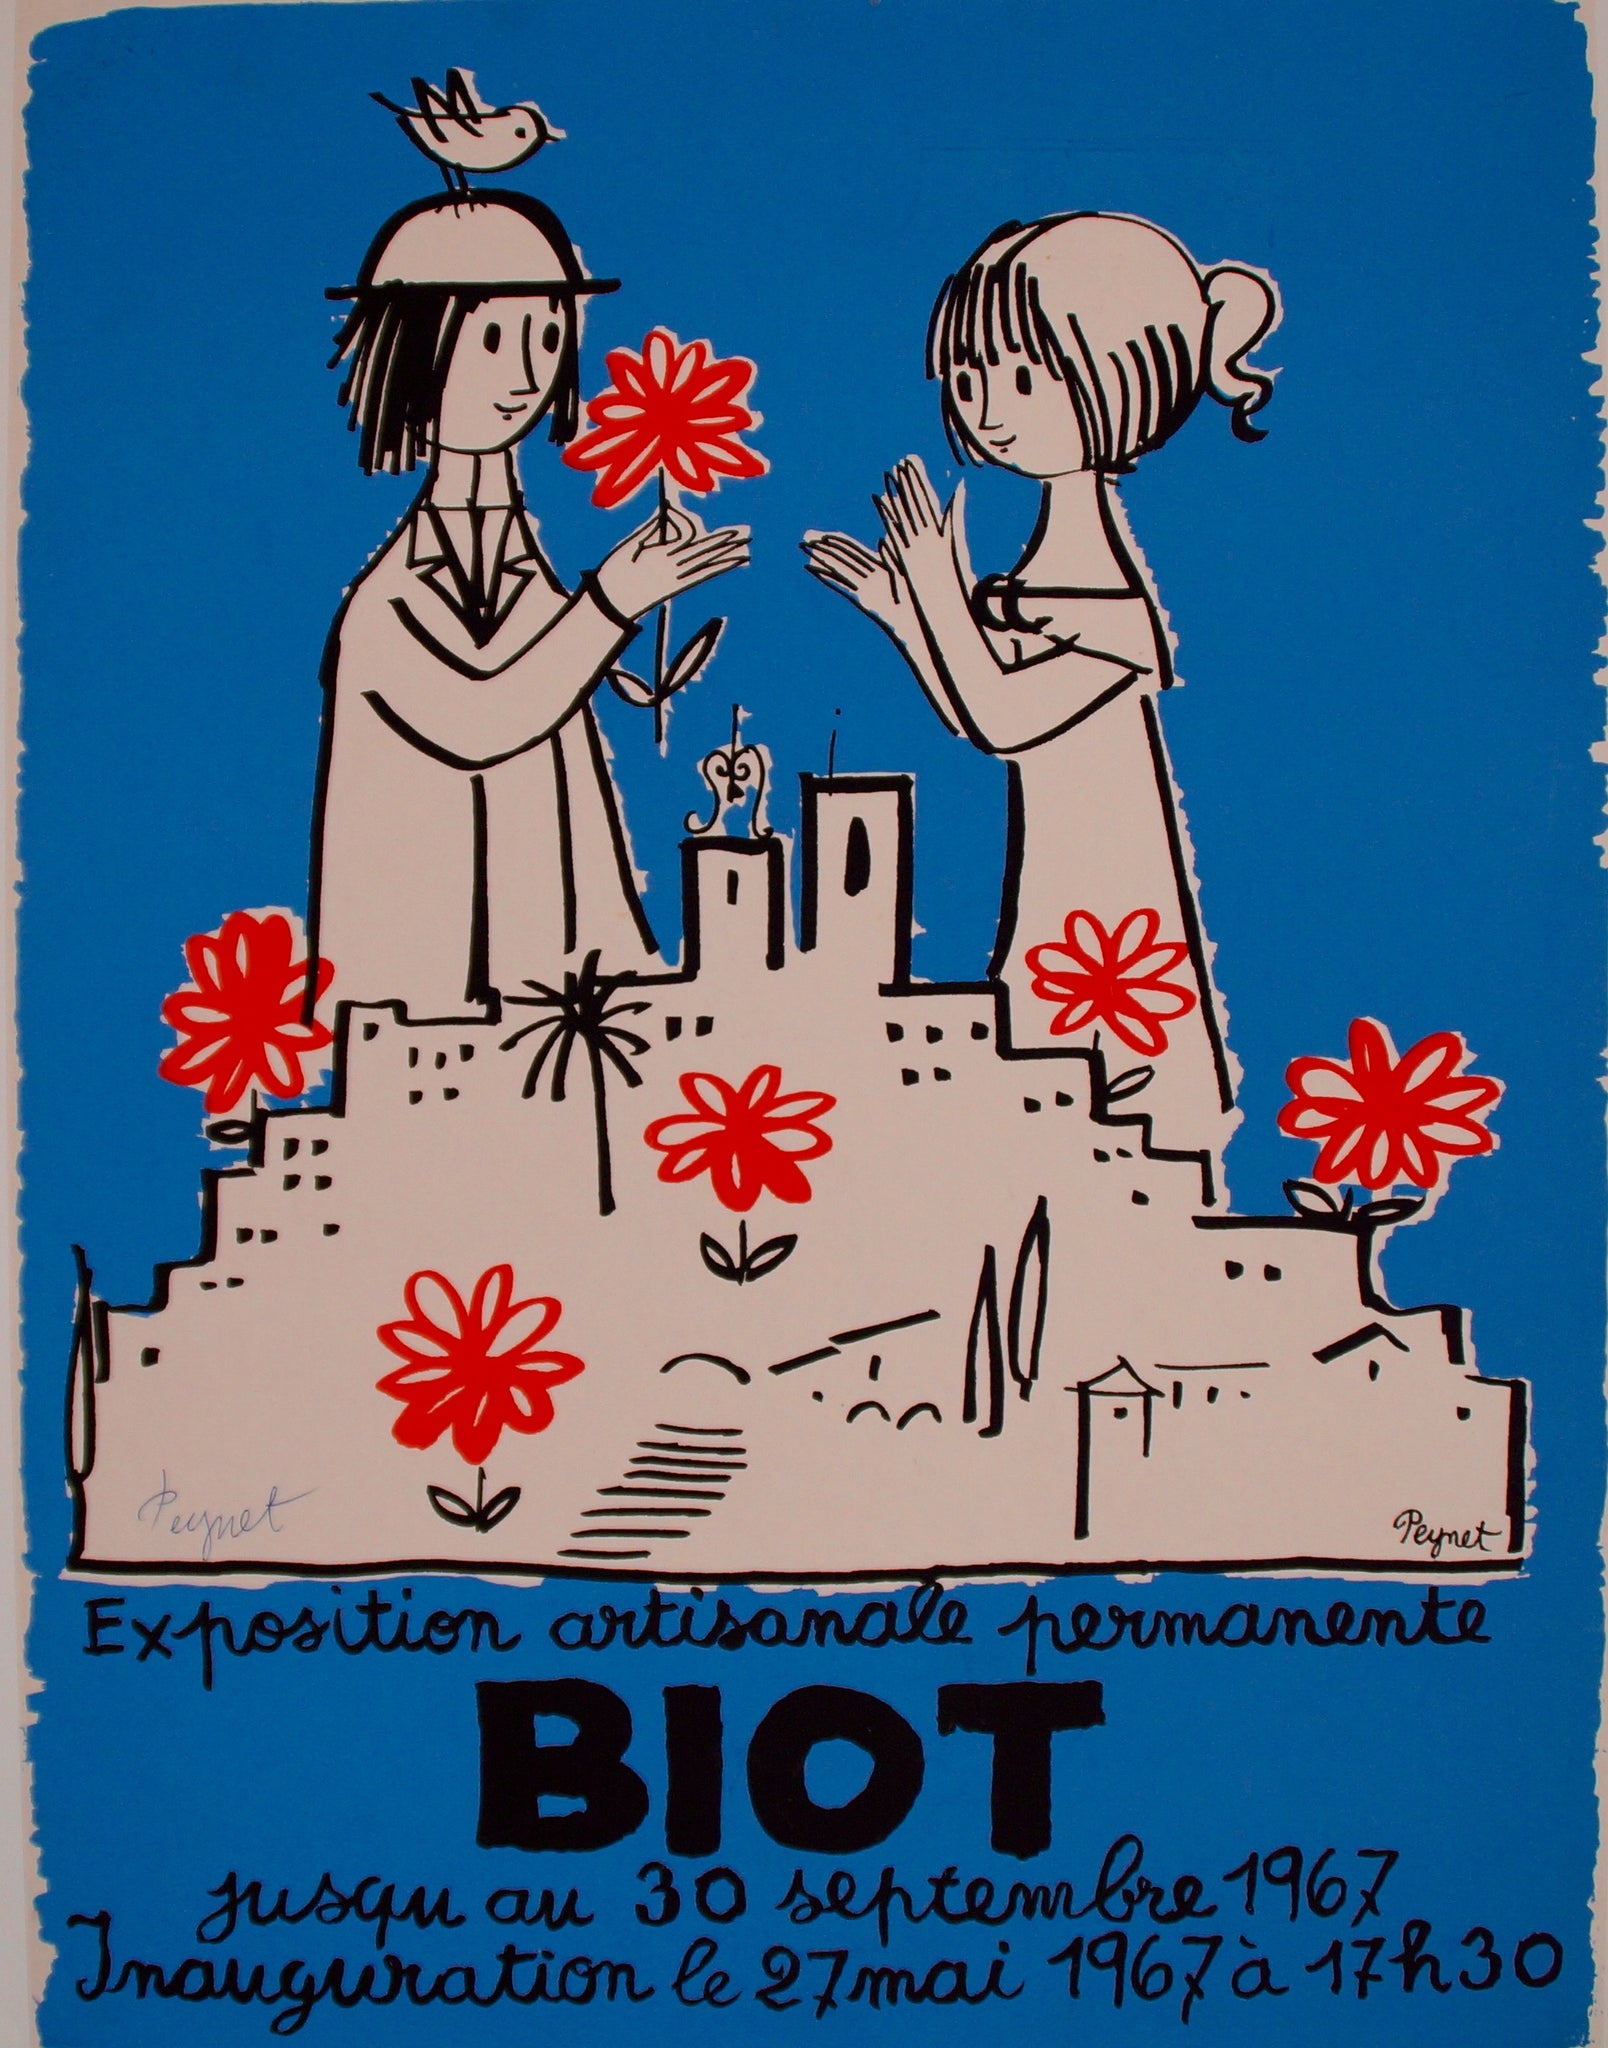 Affiche Exposition Artisanle permanente BIOT d'après Peynet, 1967